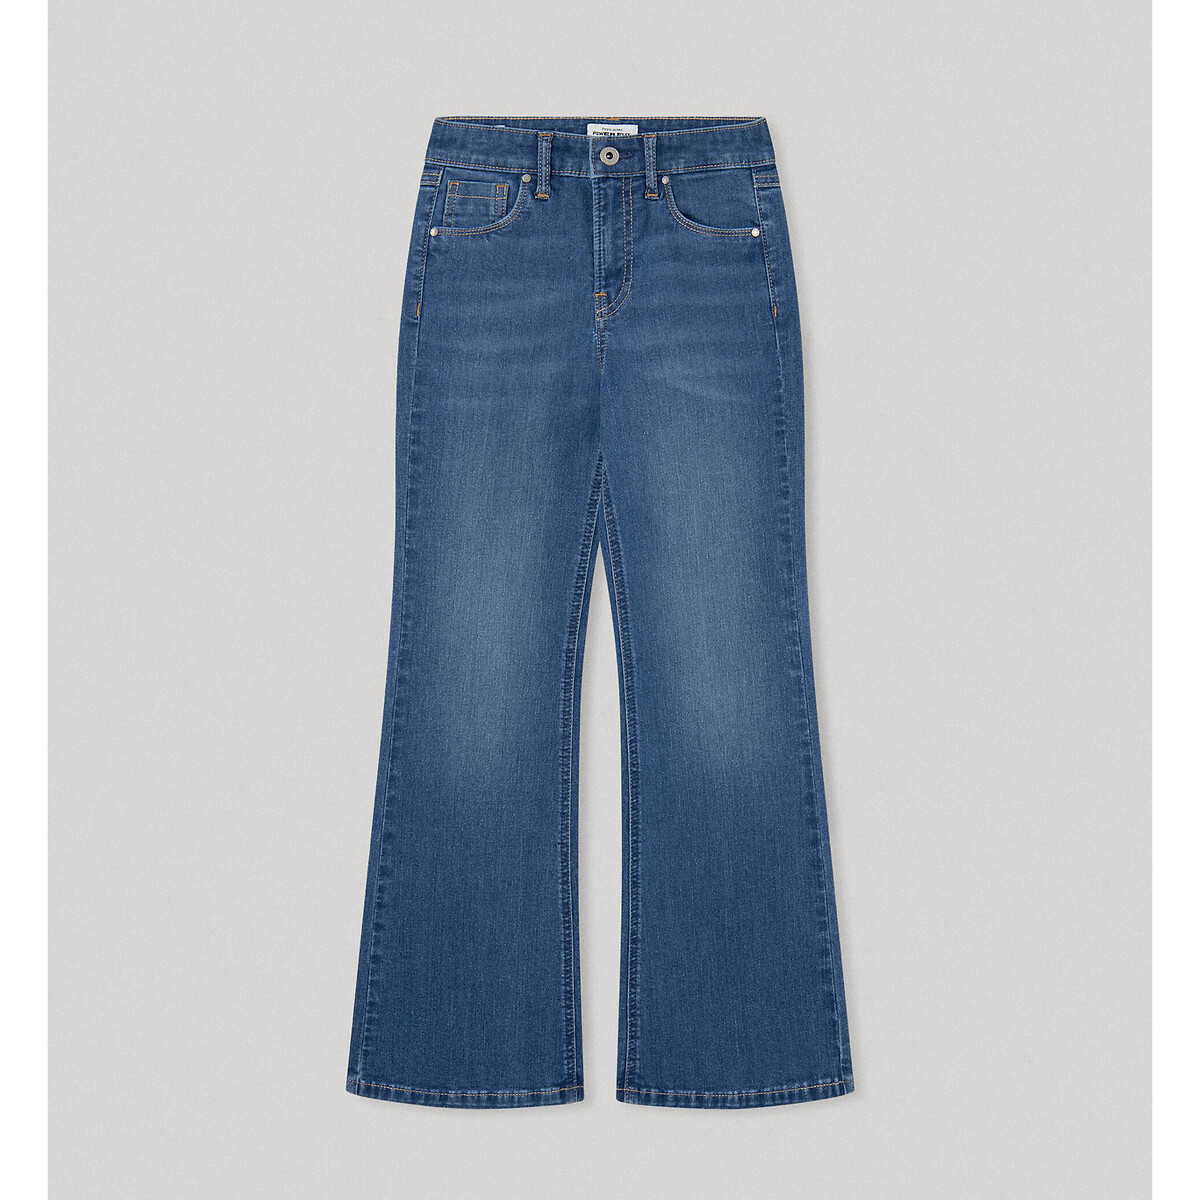 Джинсы расклешенные с высокой посадкой Willa 10 синий джинсы расклешенные с высокой посадкой xl синий